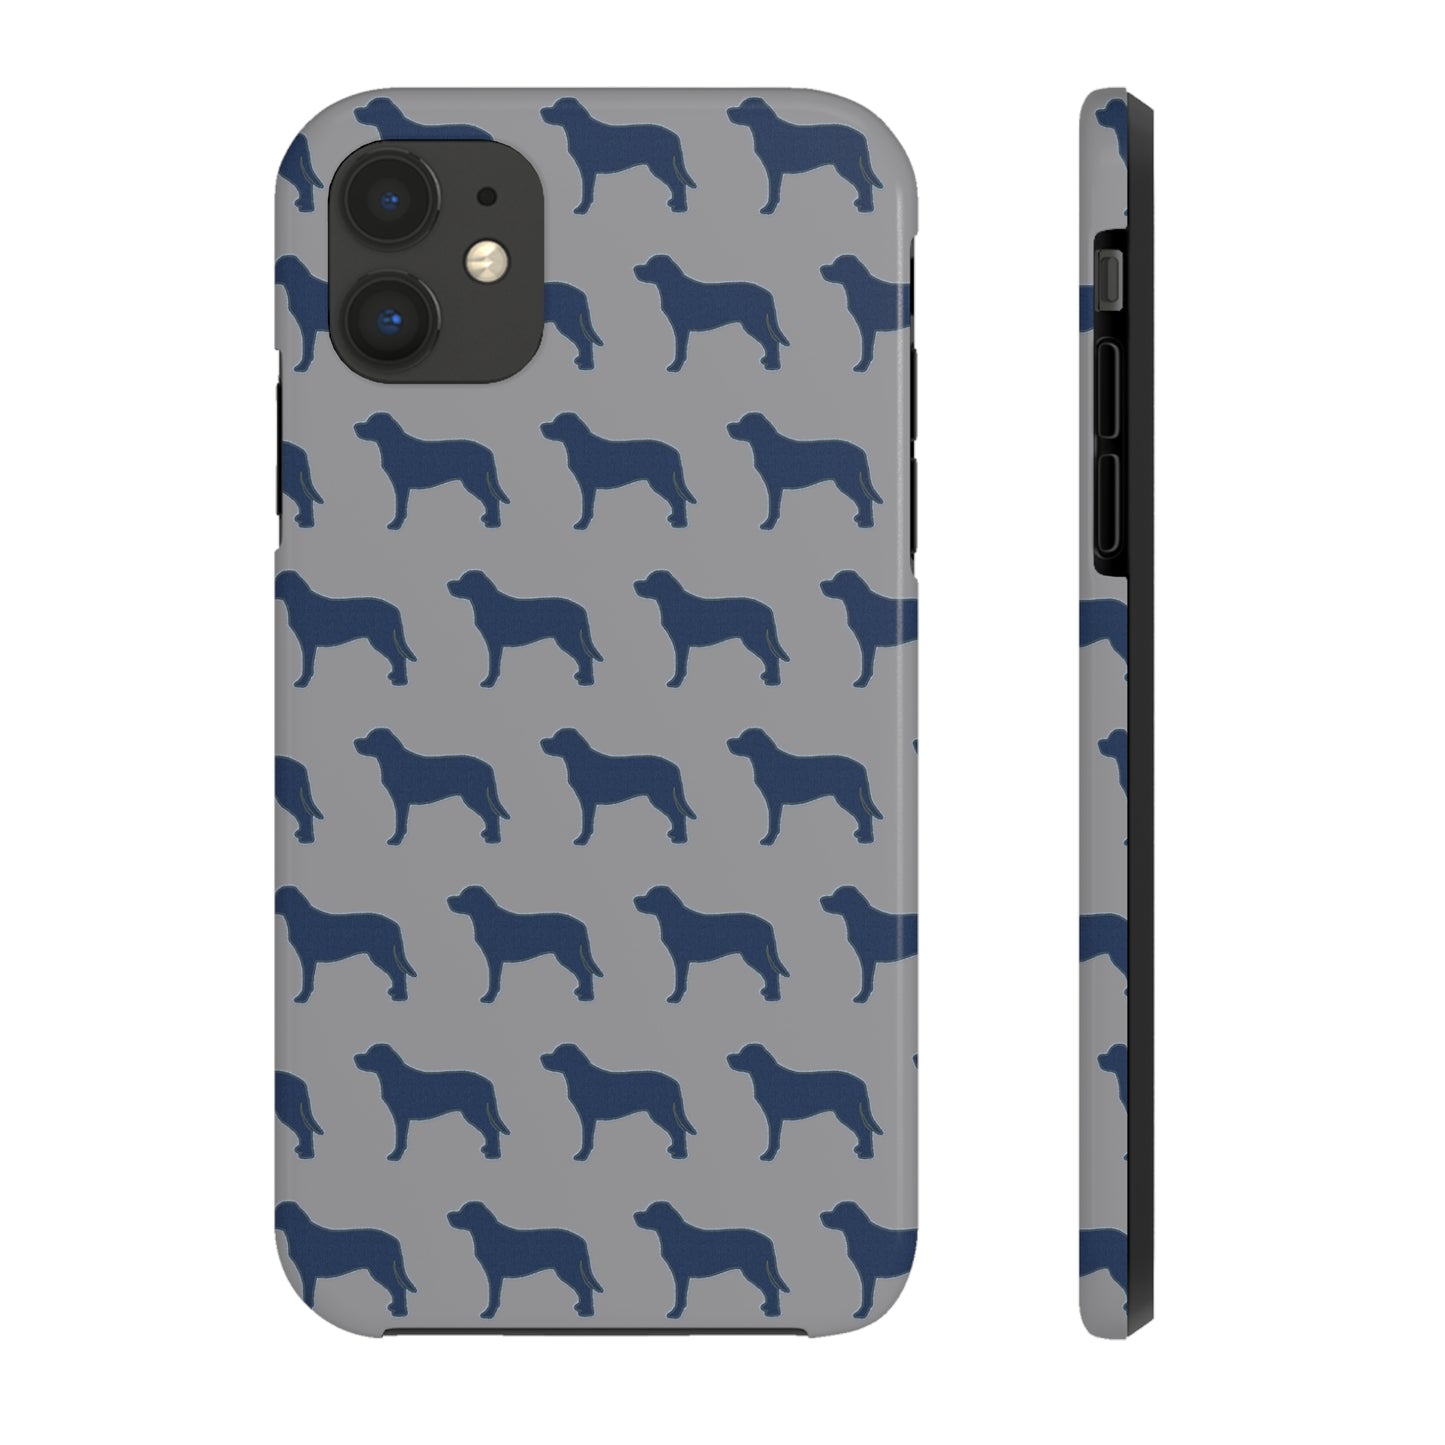 Labrador Retriever iPhone Tough Phone Cases